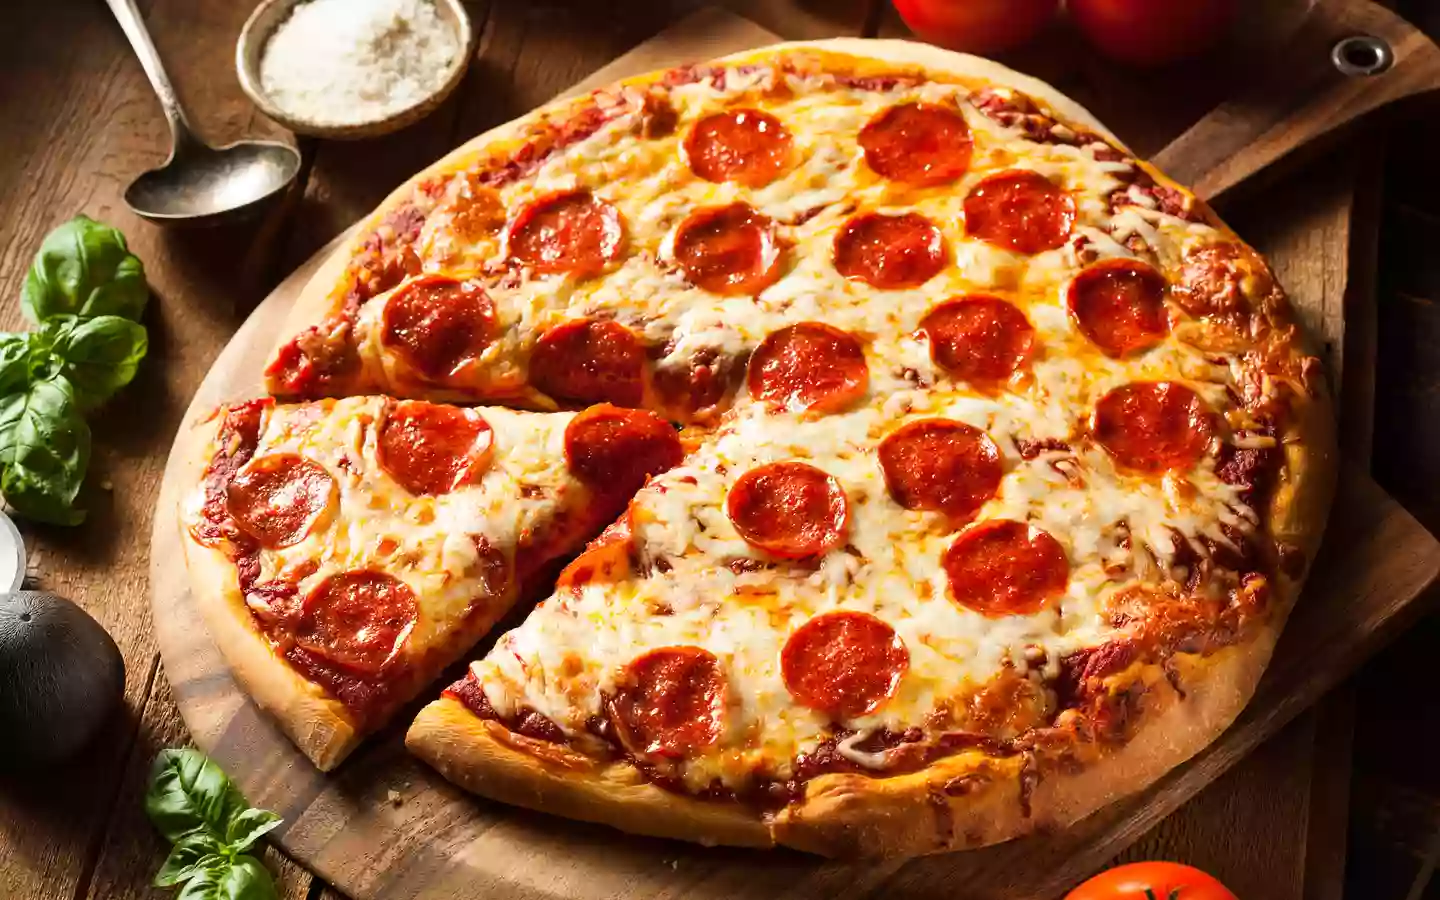 SPICY FRIED CHICKEN & PIZZA